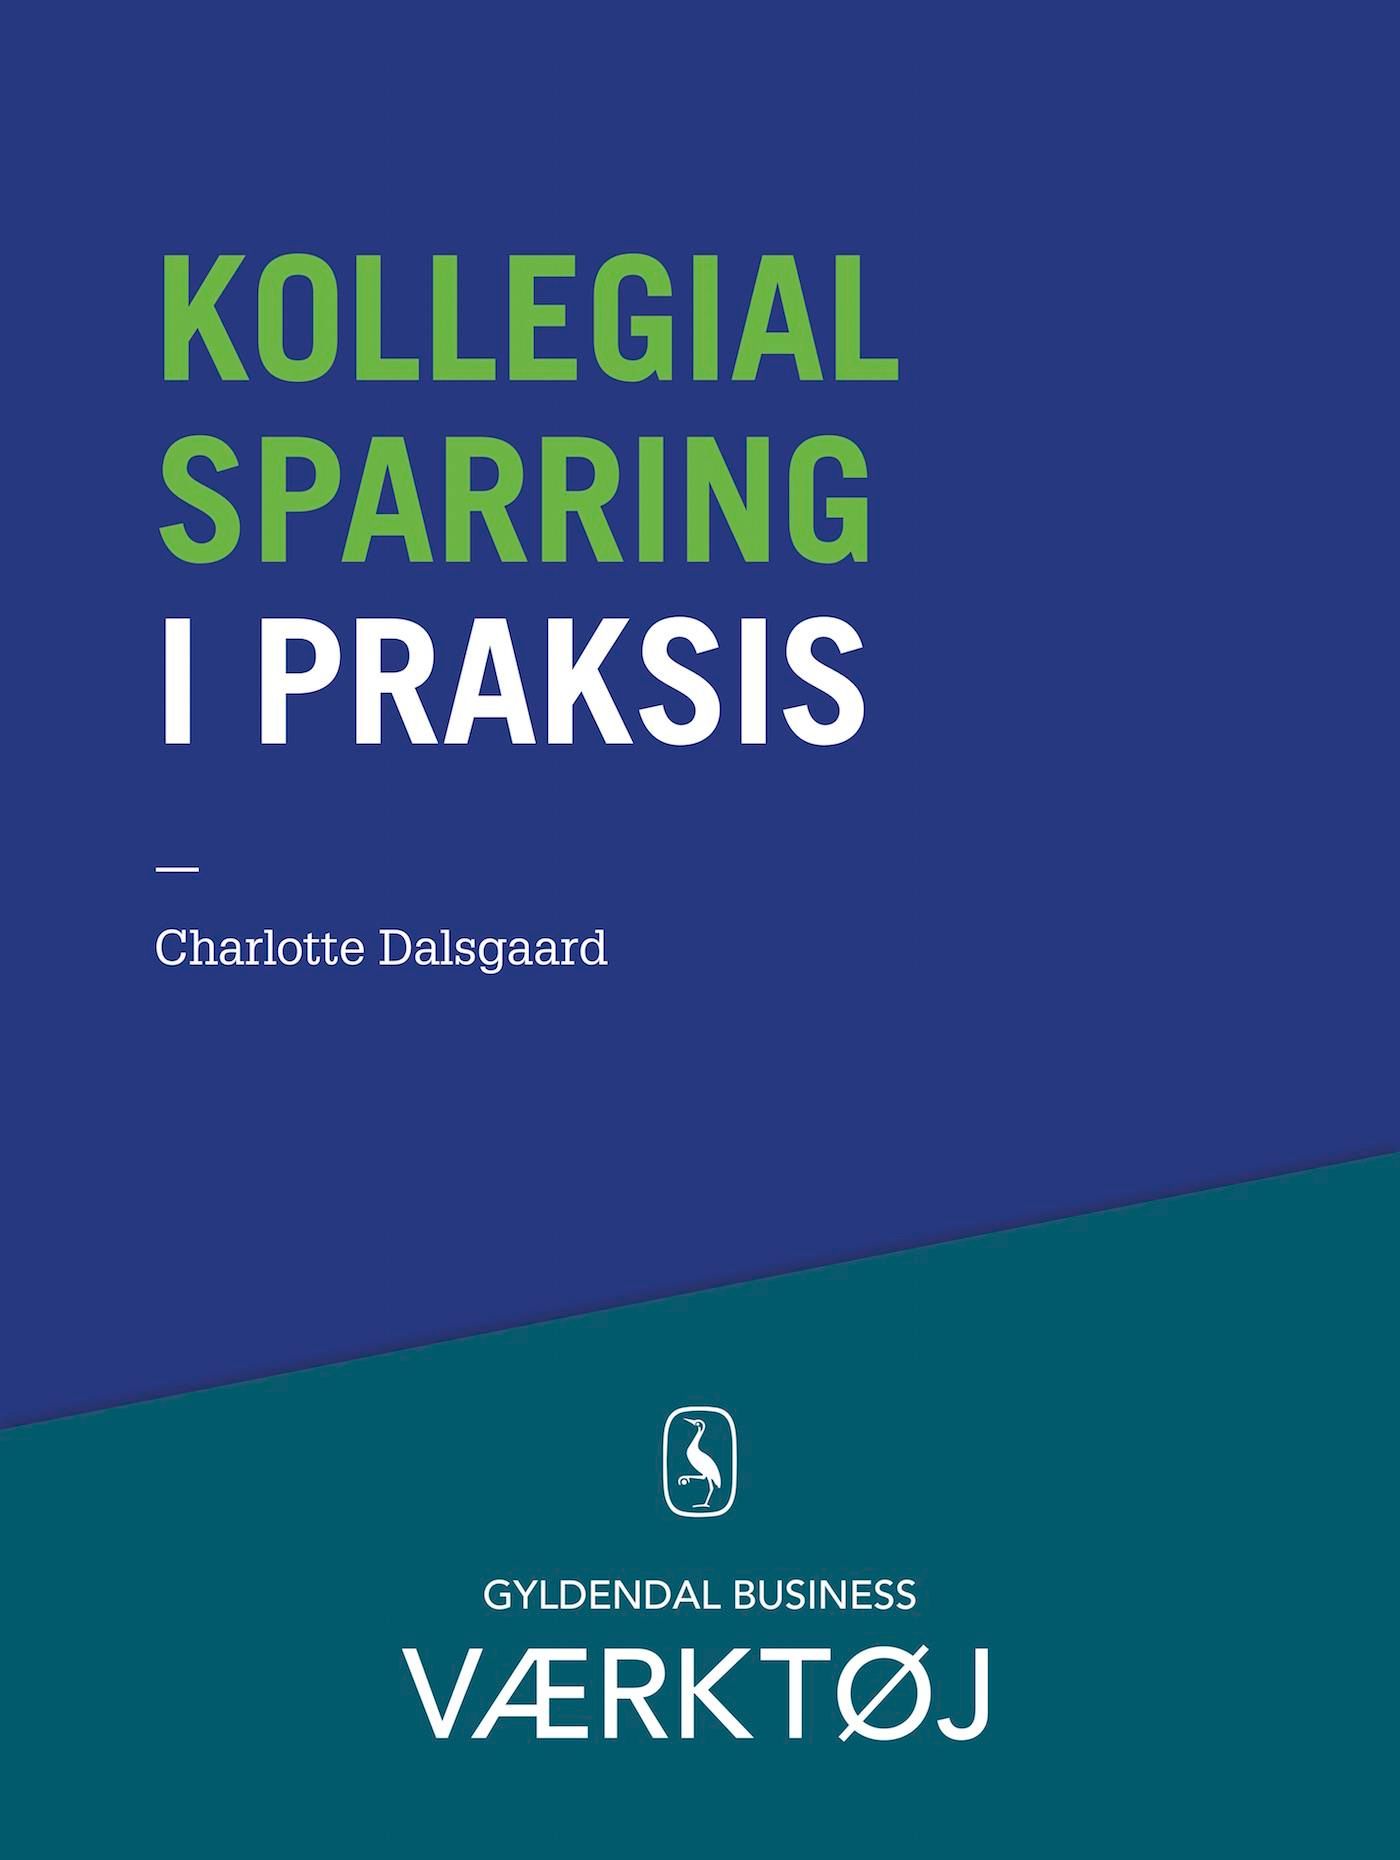 Kollegial sparring i praksis, e-bok av Charlotte Dalsgaard